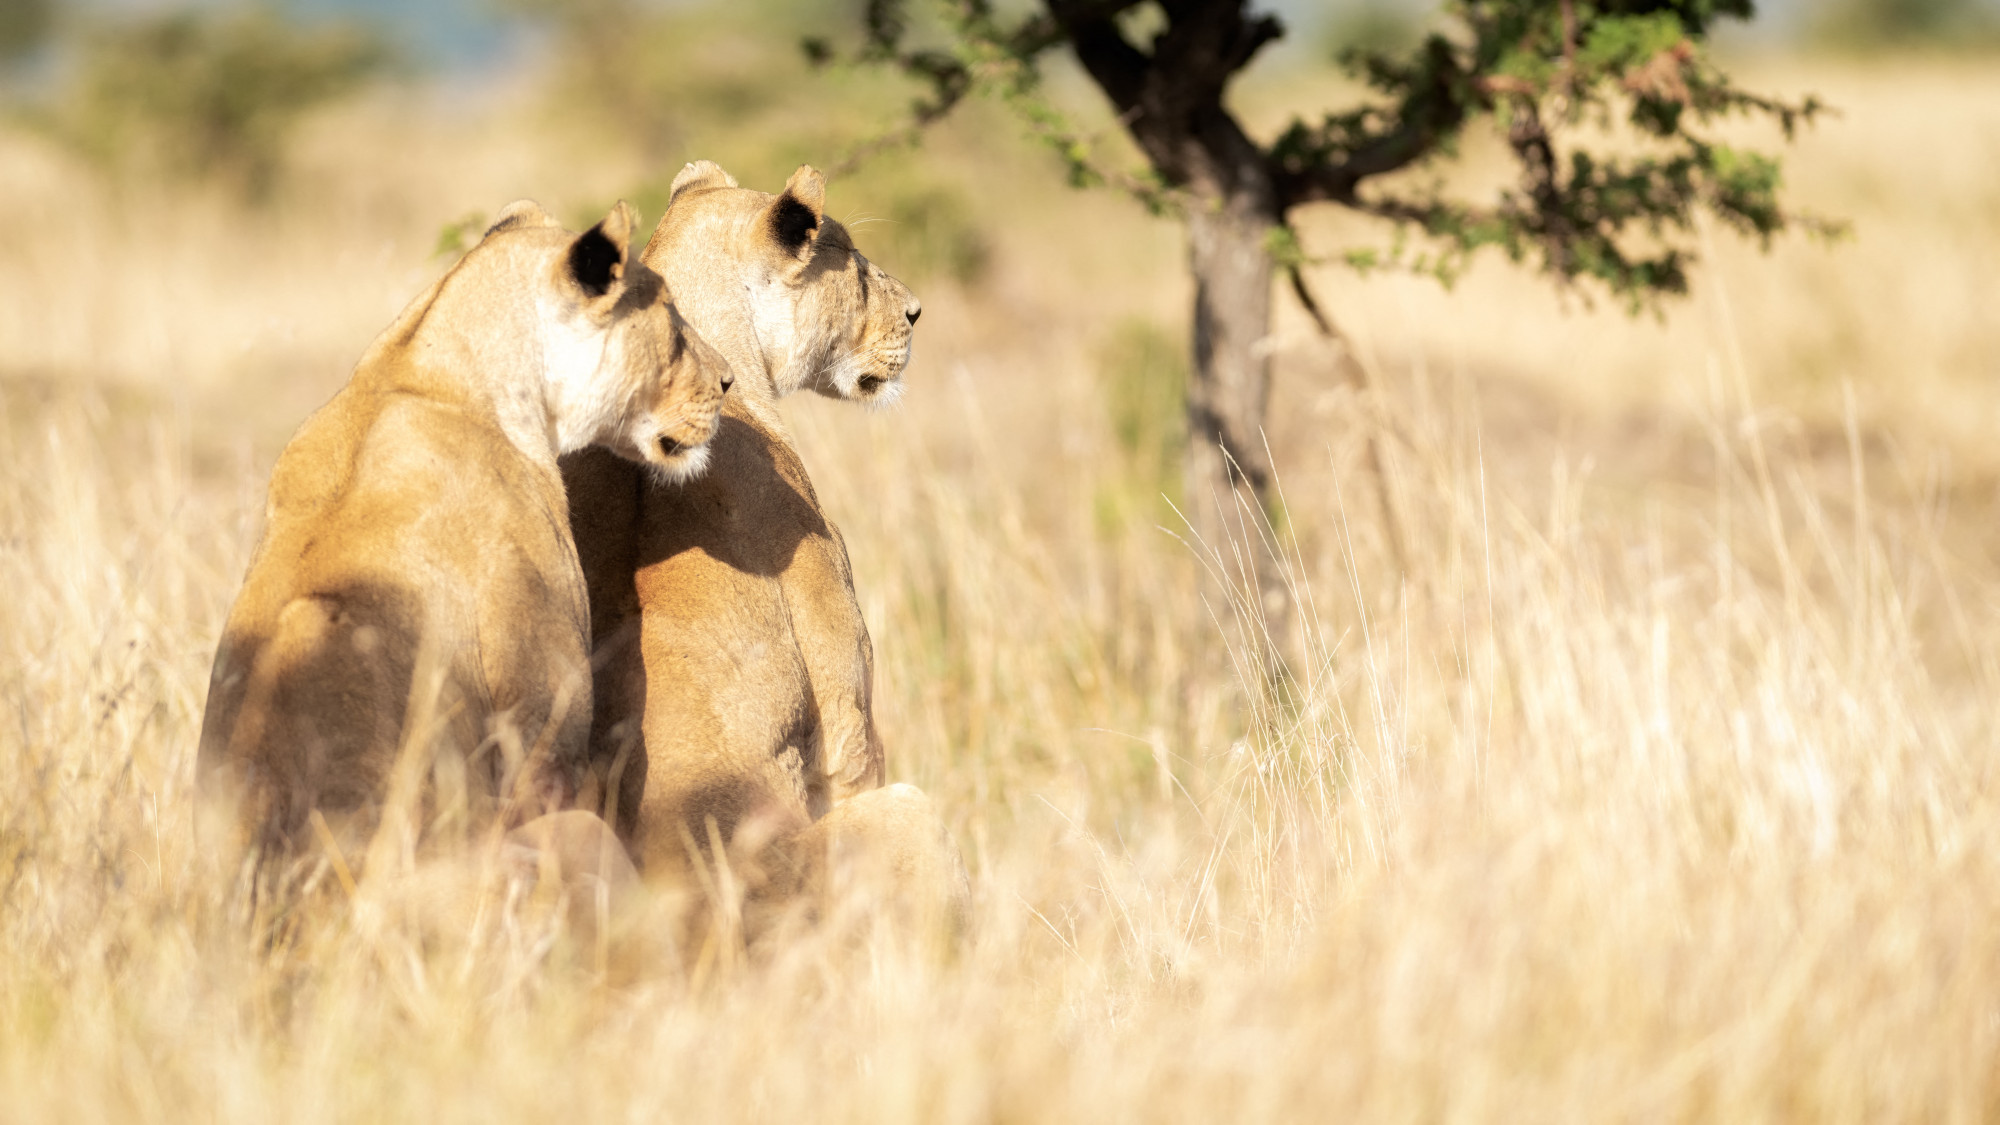 A kenyai oroszlánok étlapja mellett az egész szavannát átalakíthatja egy inváziós hangyafaj